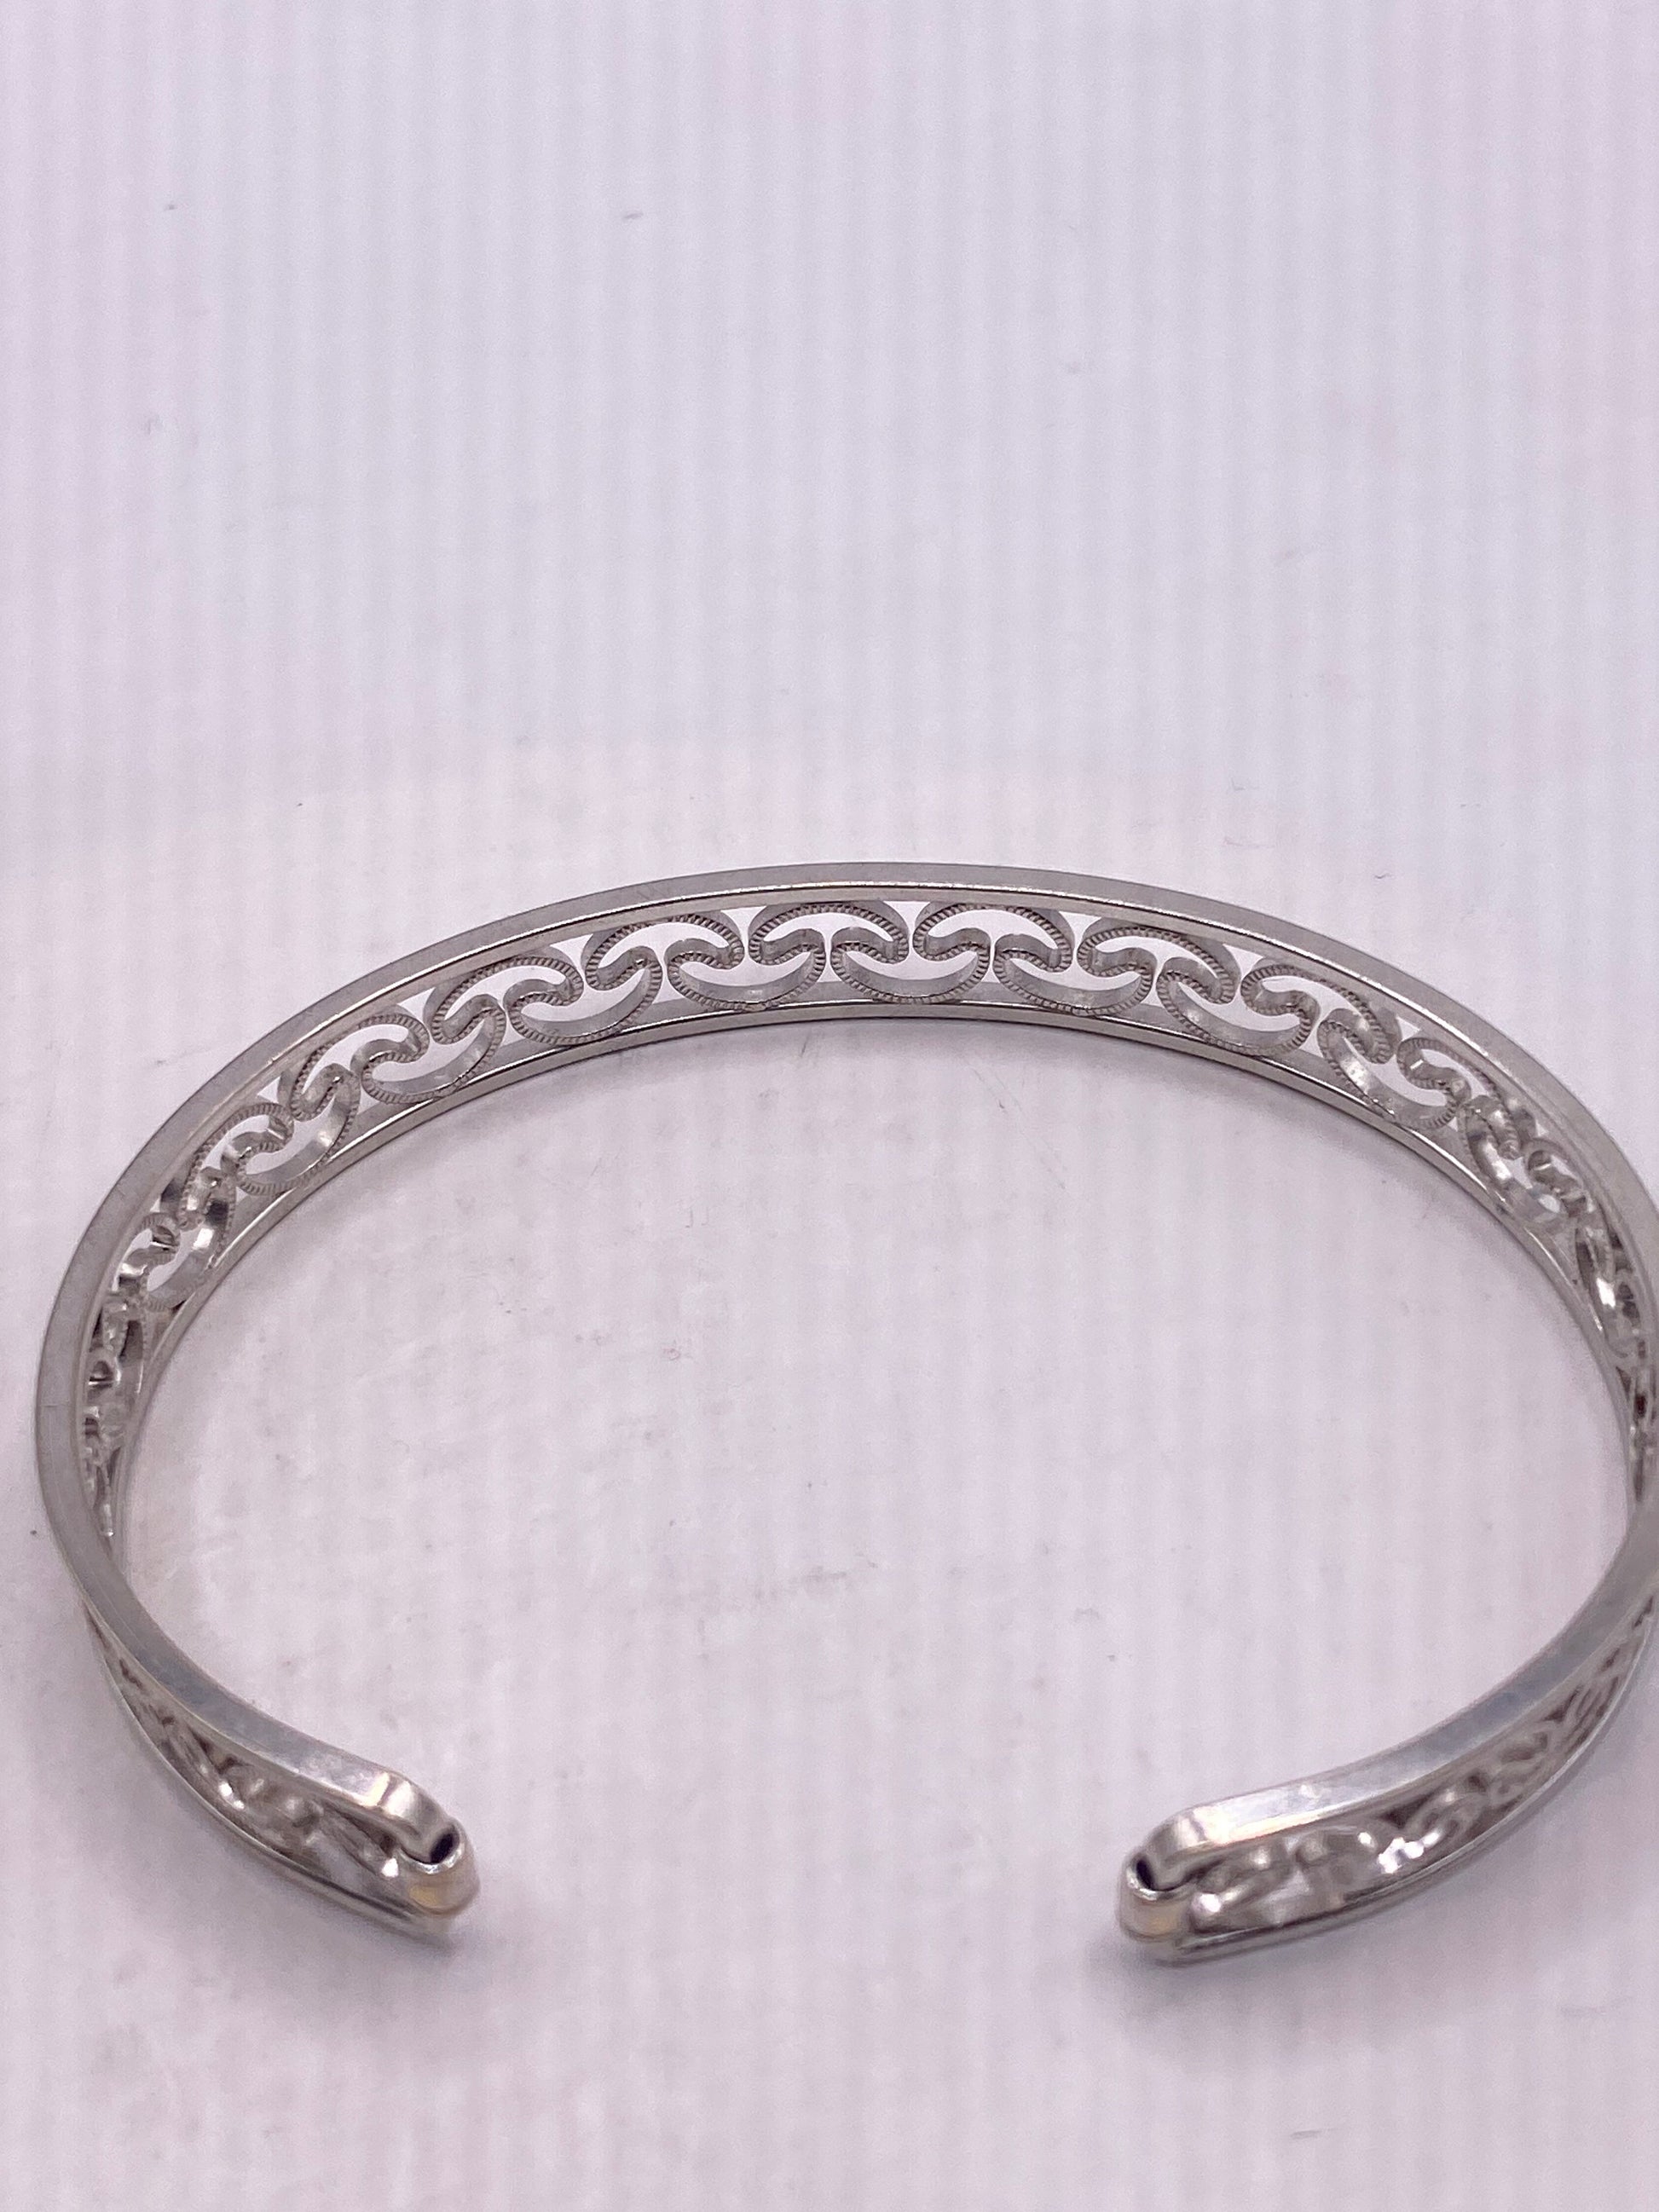 Vintage 925 Sterling Silver Cuff Bangle Bracelet